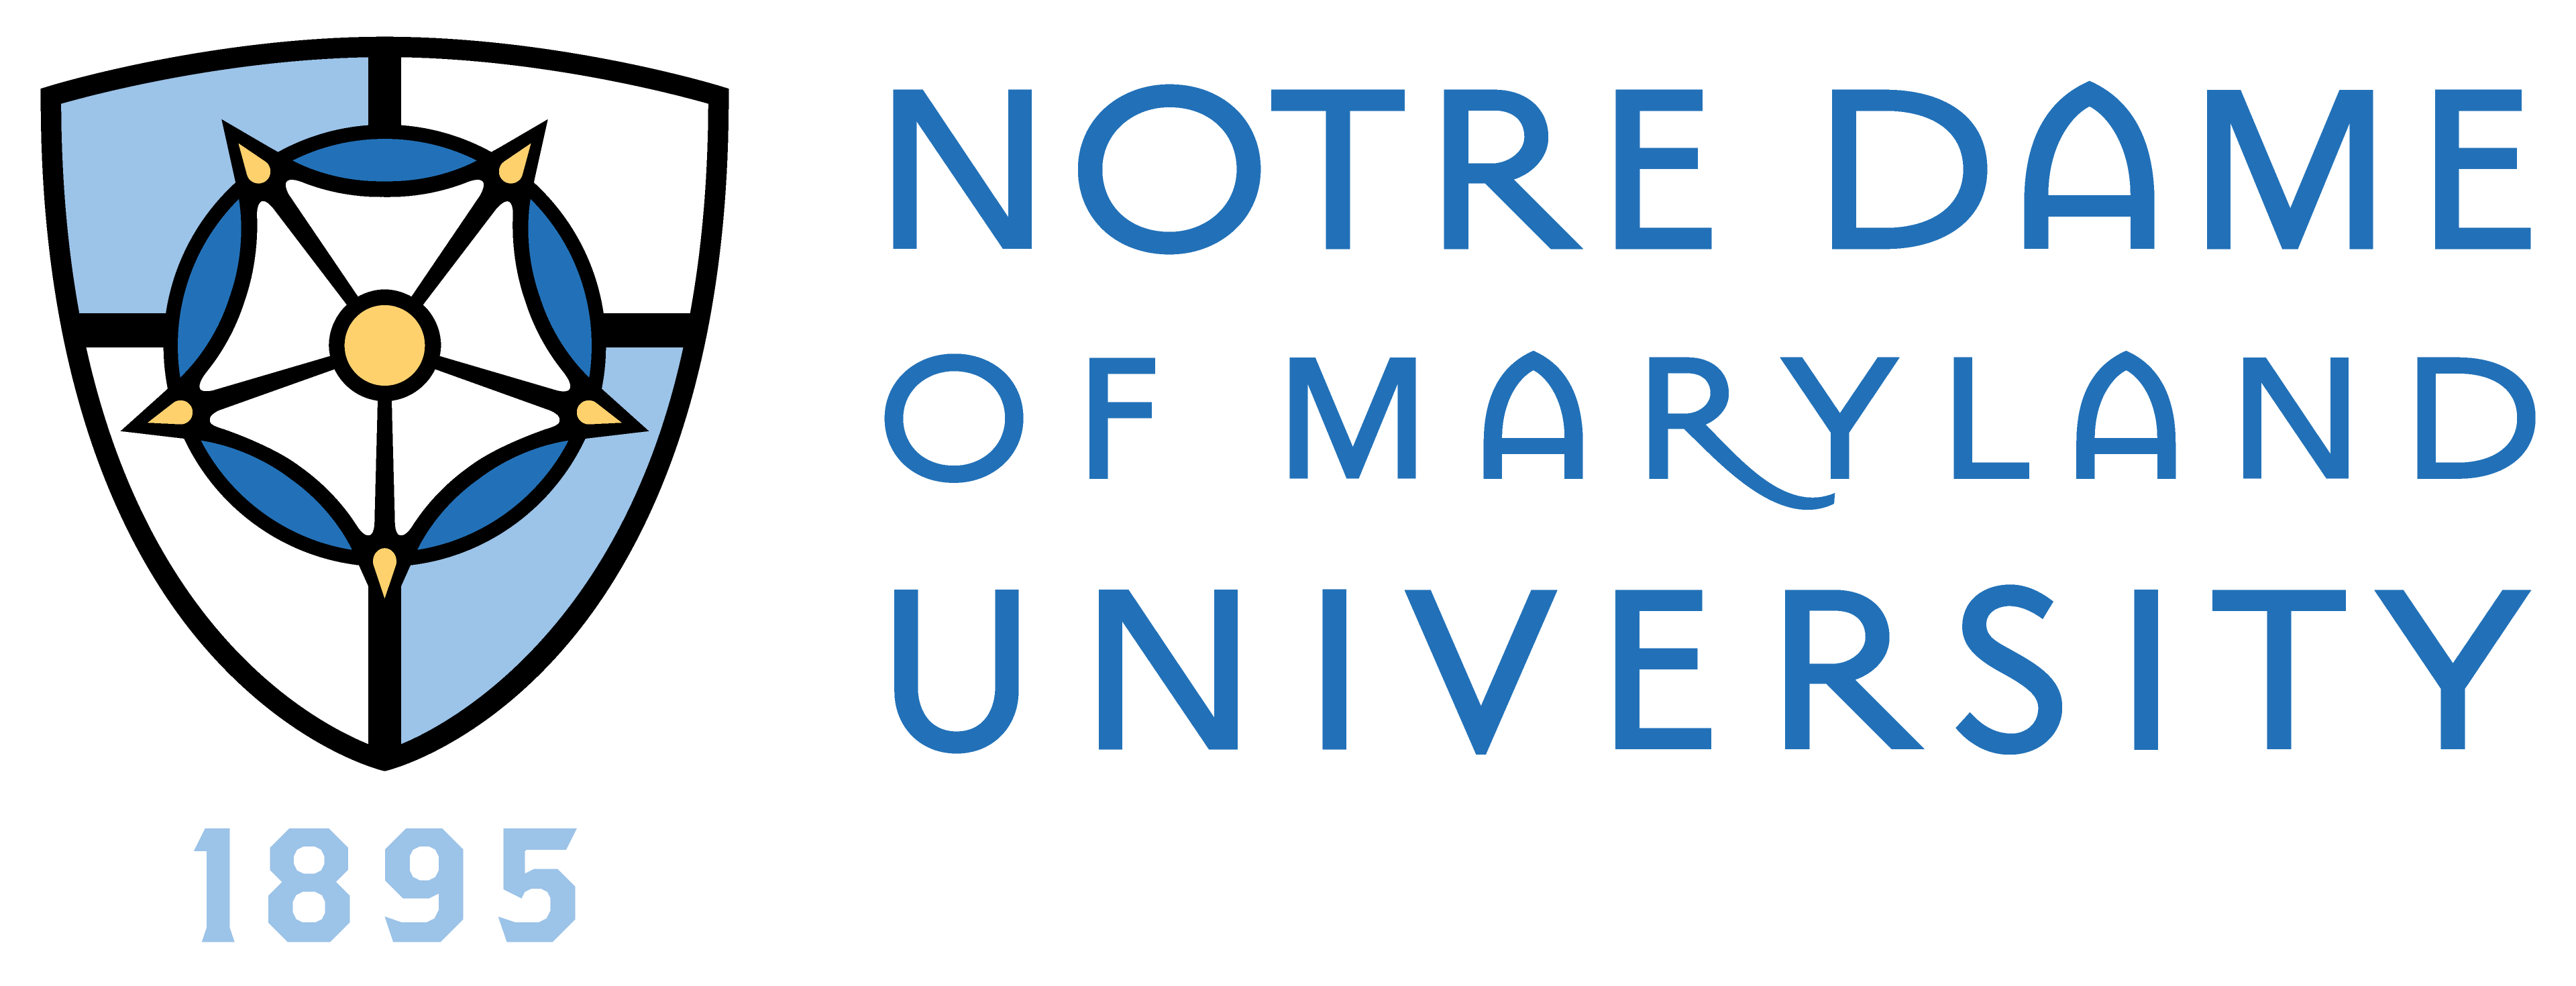 Notre Dame of Maryland University logo